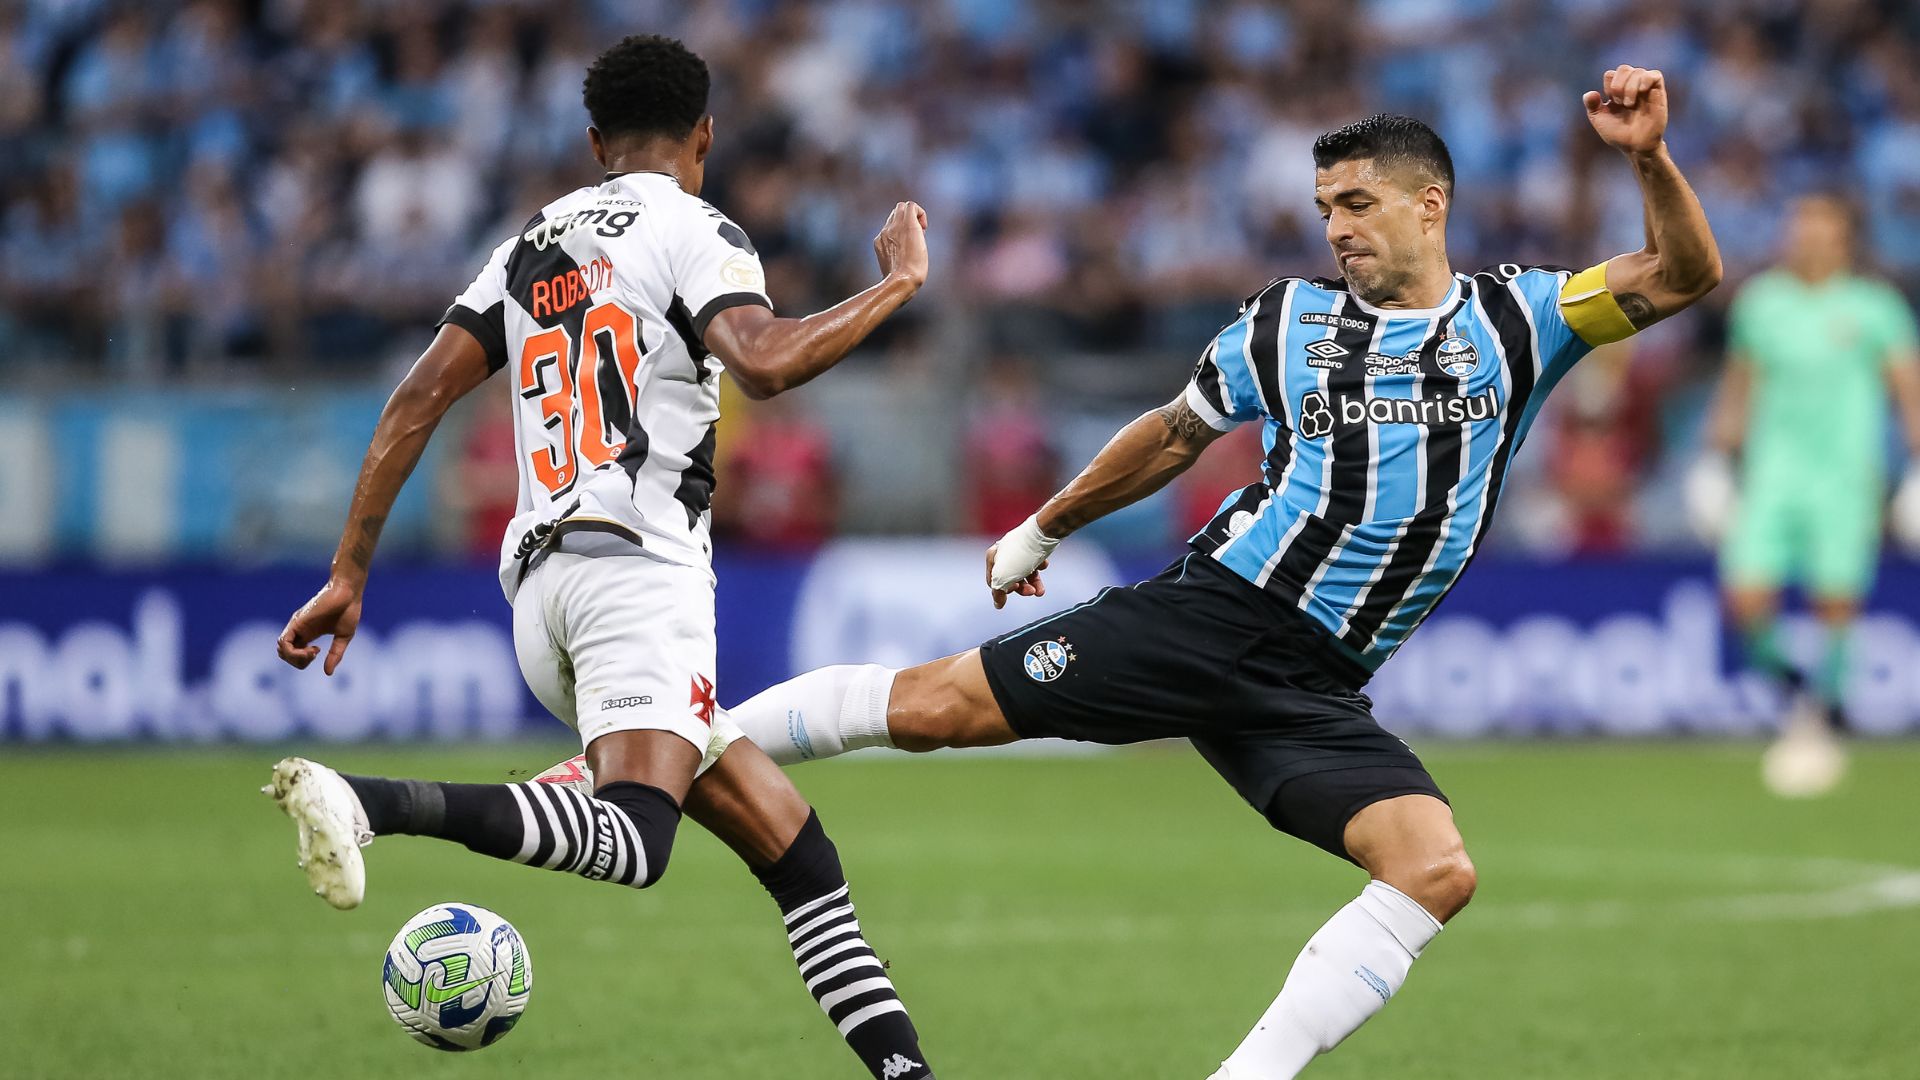 Grêmio vs CSA: A Clash of Titans in Brazilian Football